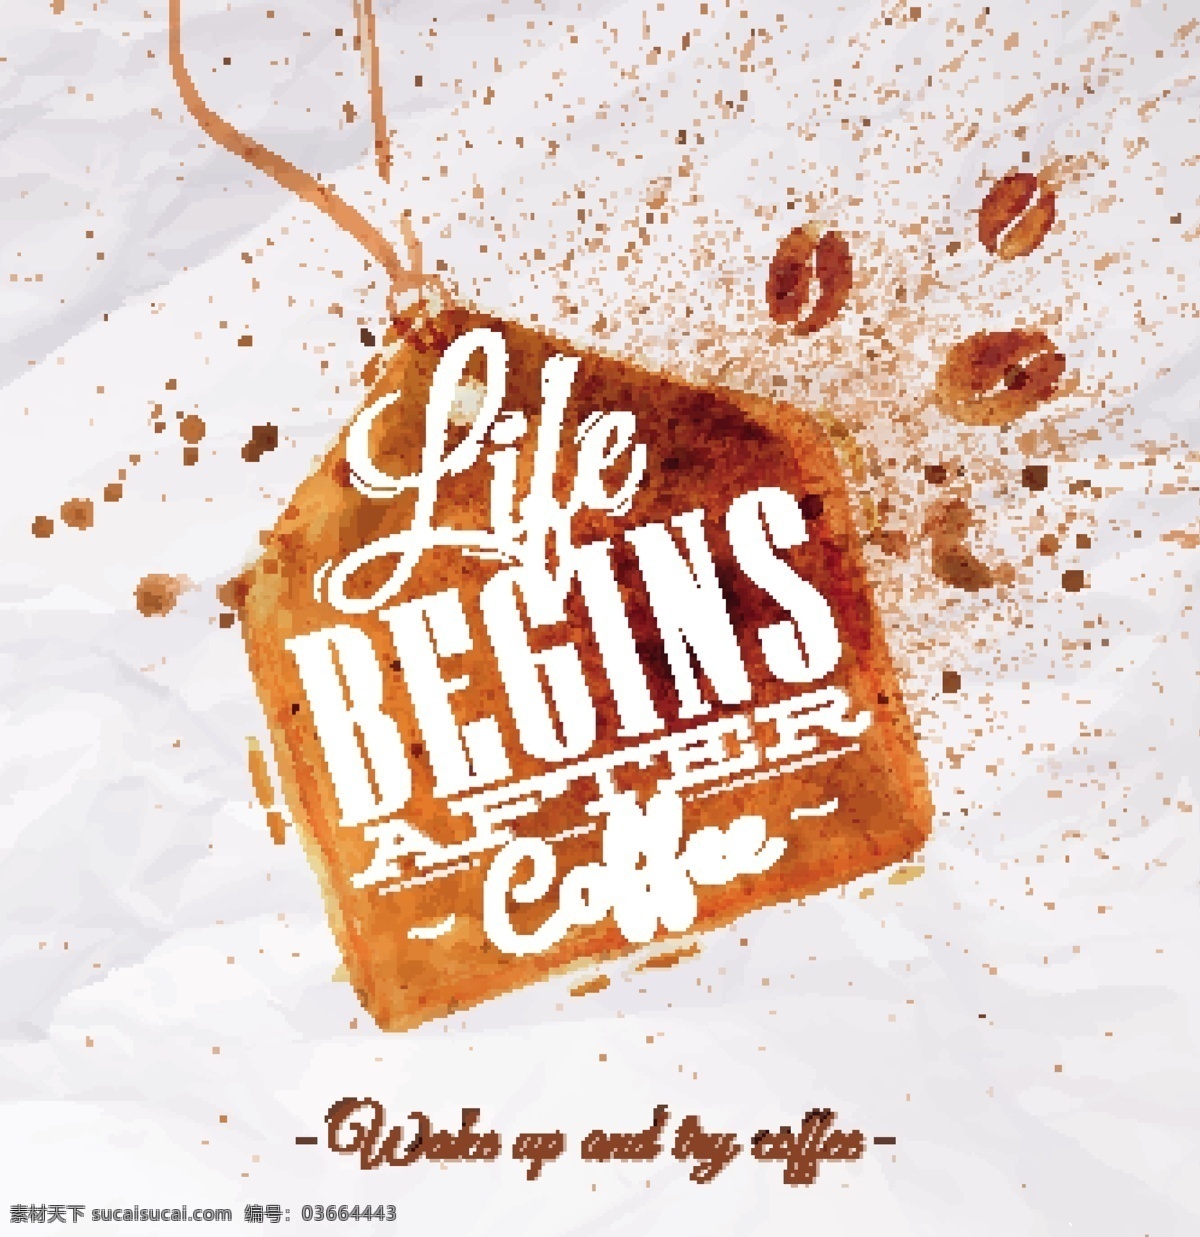 咖啡 咖啡设计 咖啡图标 咖啡标志 手绘 咖啡豆 咖啡店 咖啡元素 咖啡店图标 logo coffee 咖啡商标 餐饮美食 生活百科